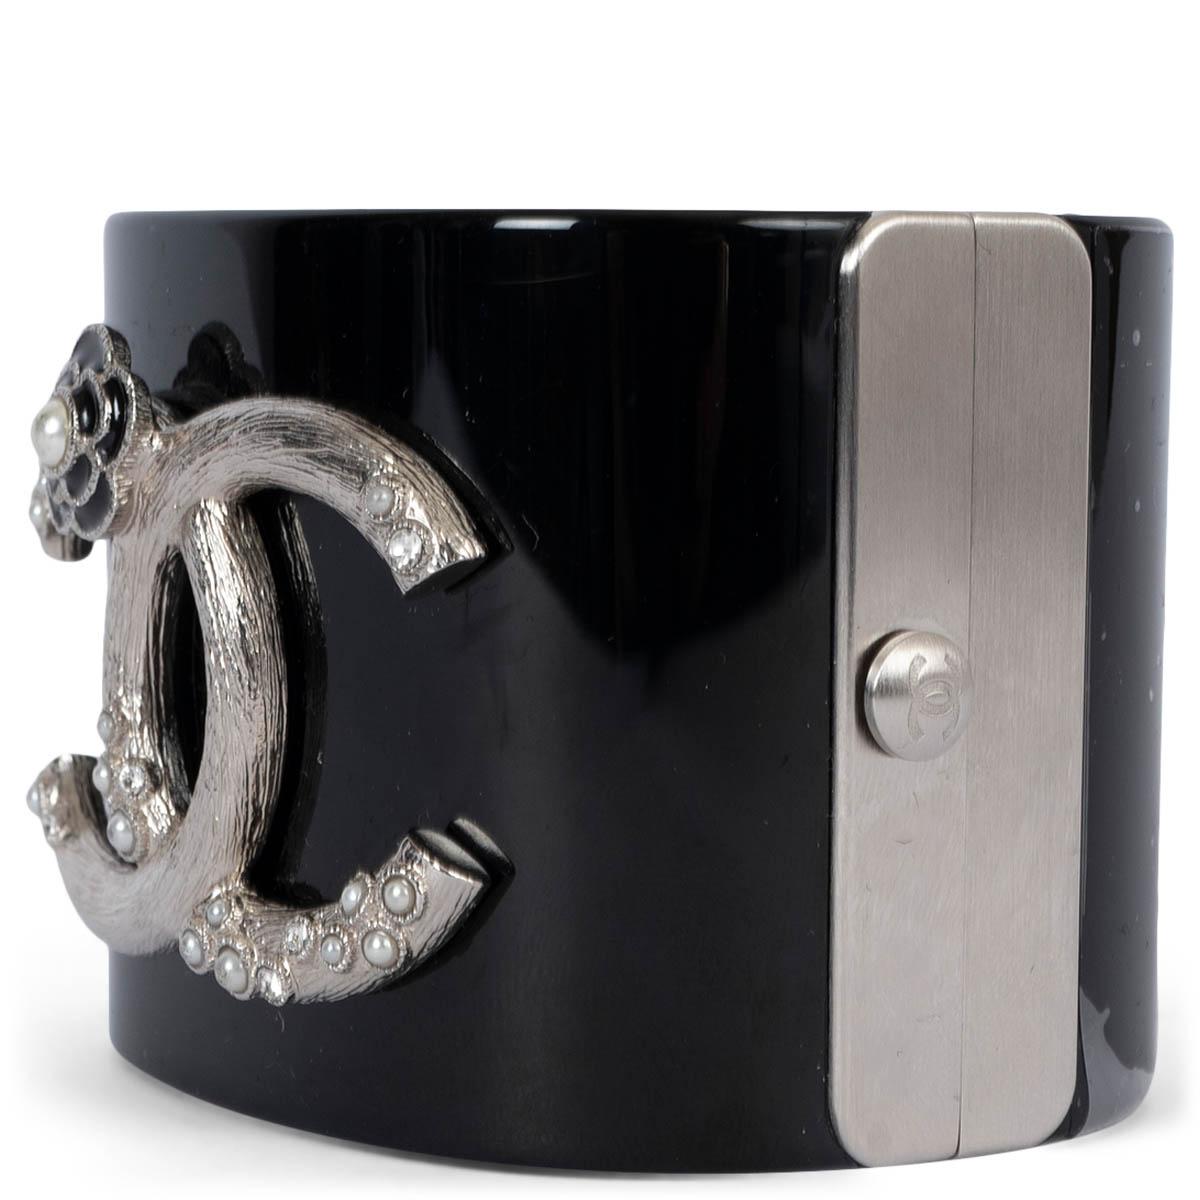 100% authentique Chanel 2014 Manchette Camélia en résine noire brillante rehaussée du logo CC avec de fausses mini perles. Neuf - plastique de protection intact. Livré avec sac à poussière et boîte. 

Mesures
Modèle	Chanel14C
Largeur	5.2cm